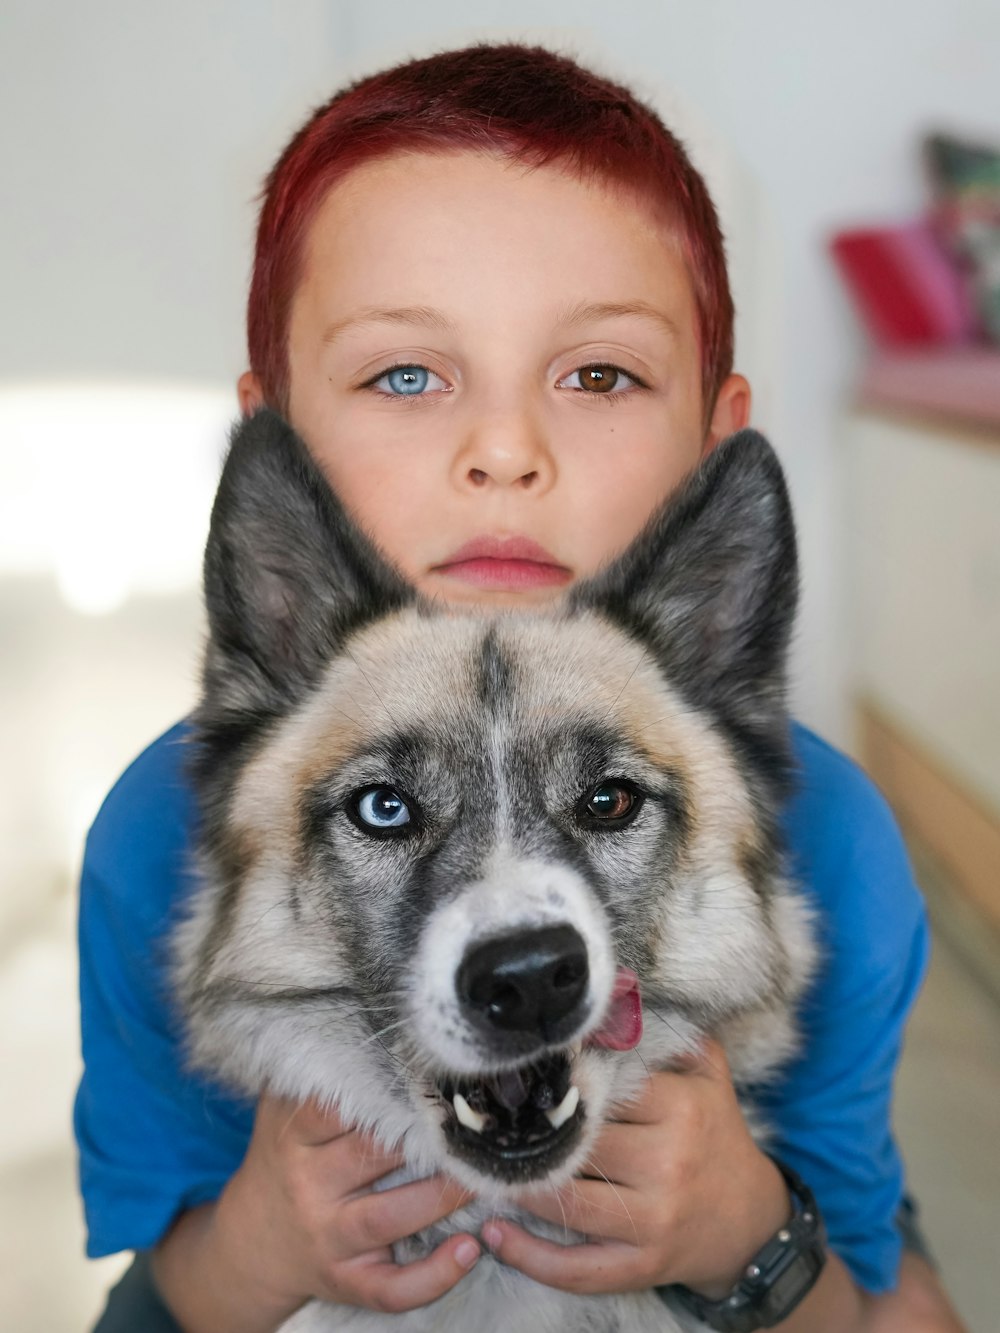 Un niño sosteniendo un perro en sus brazos